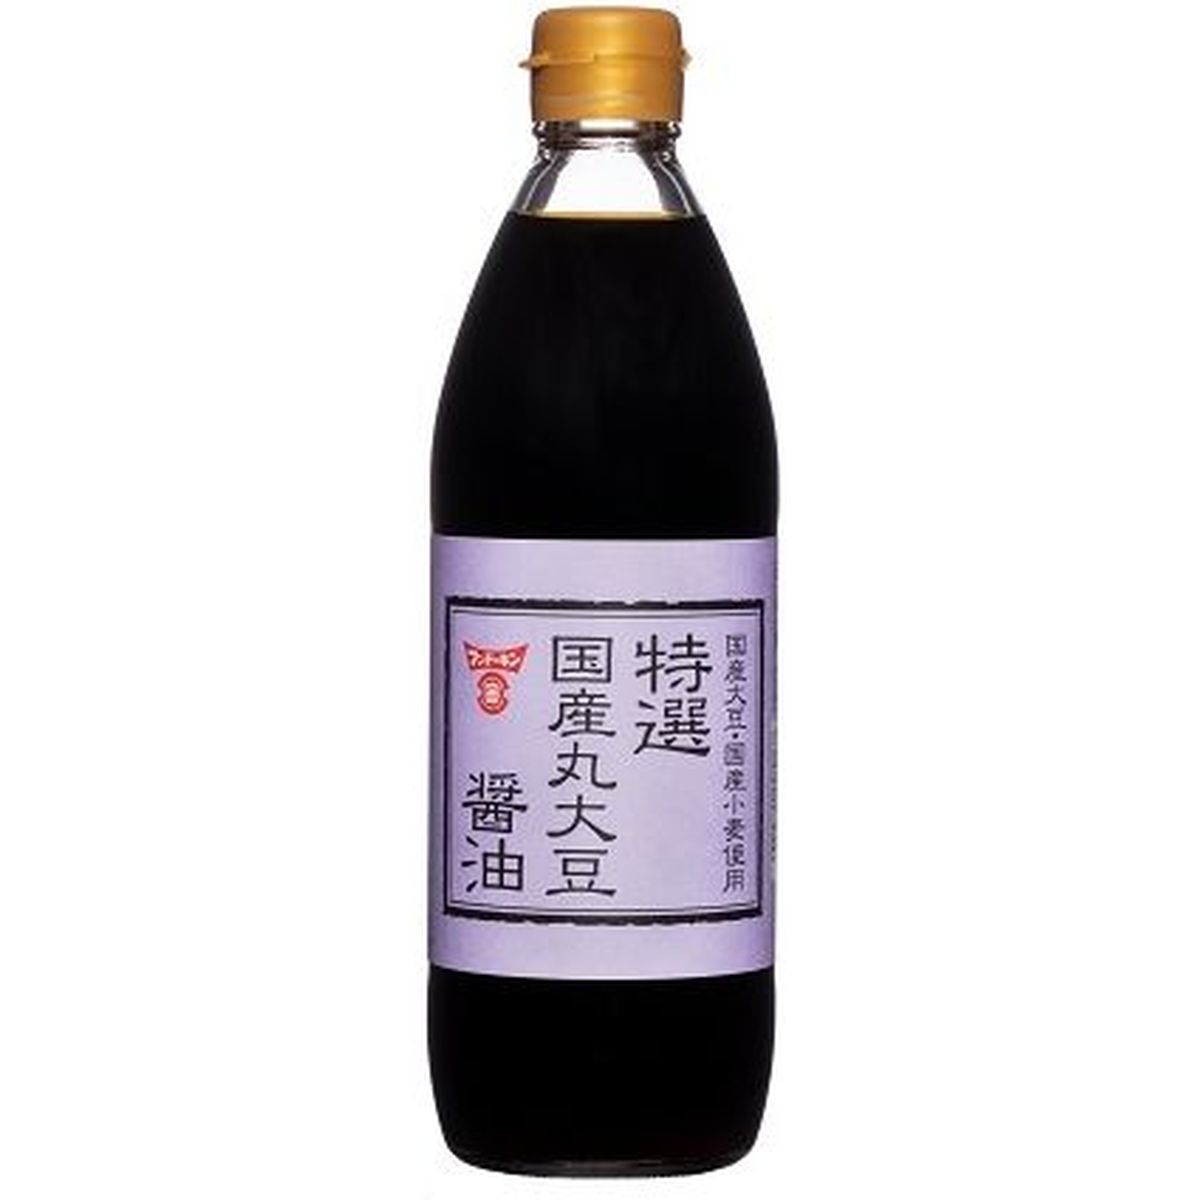 【6個入リ】フンドーキン 特選 国産丸大豆醤油 500ml